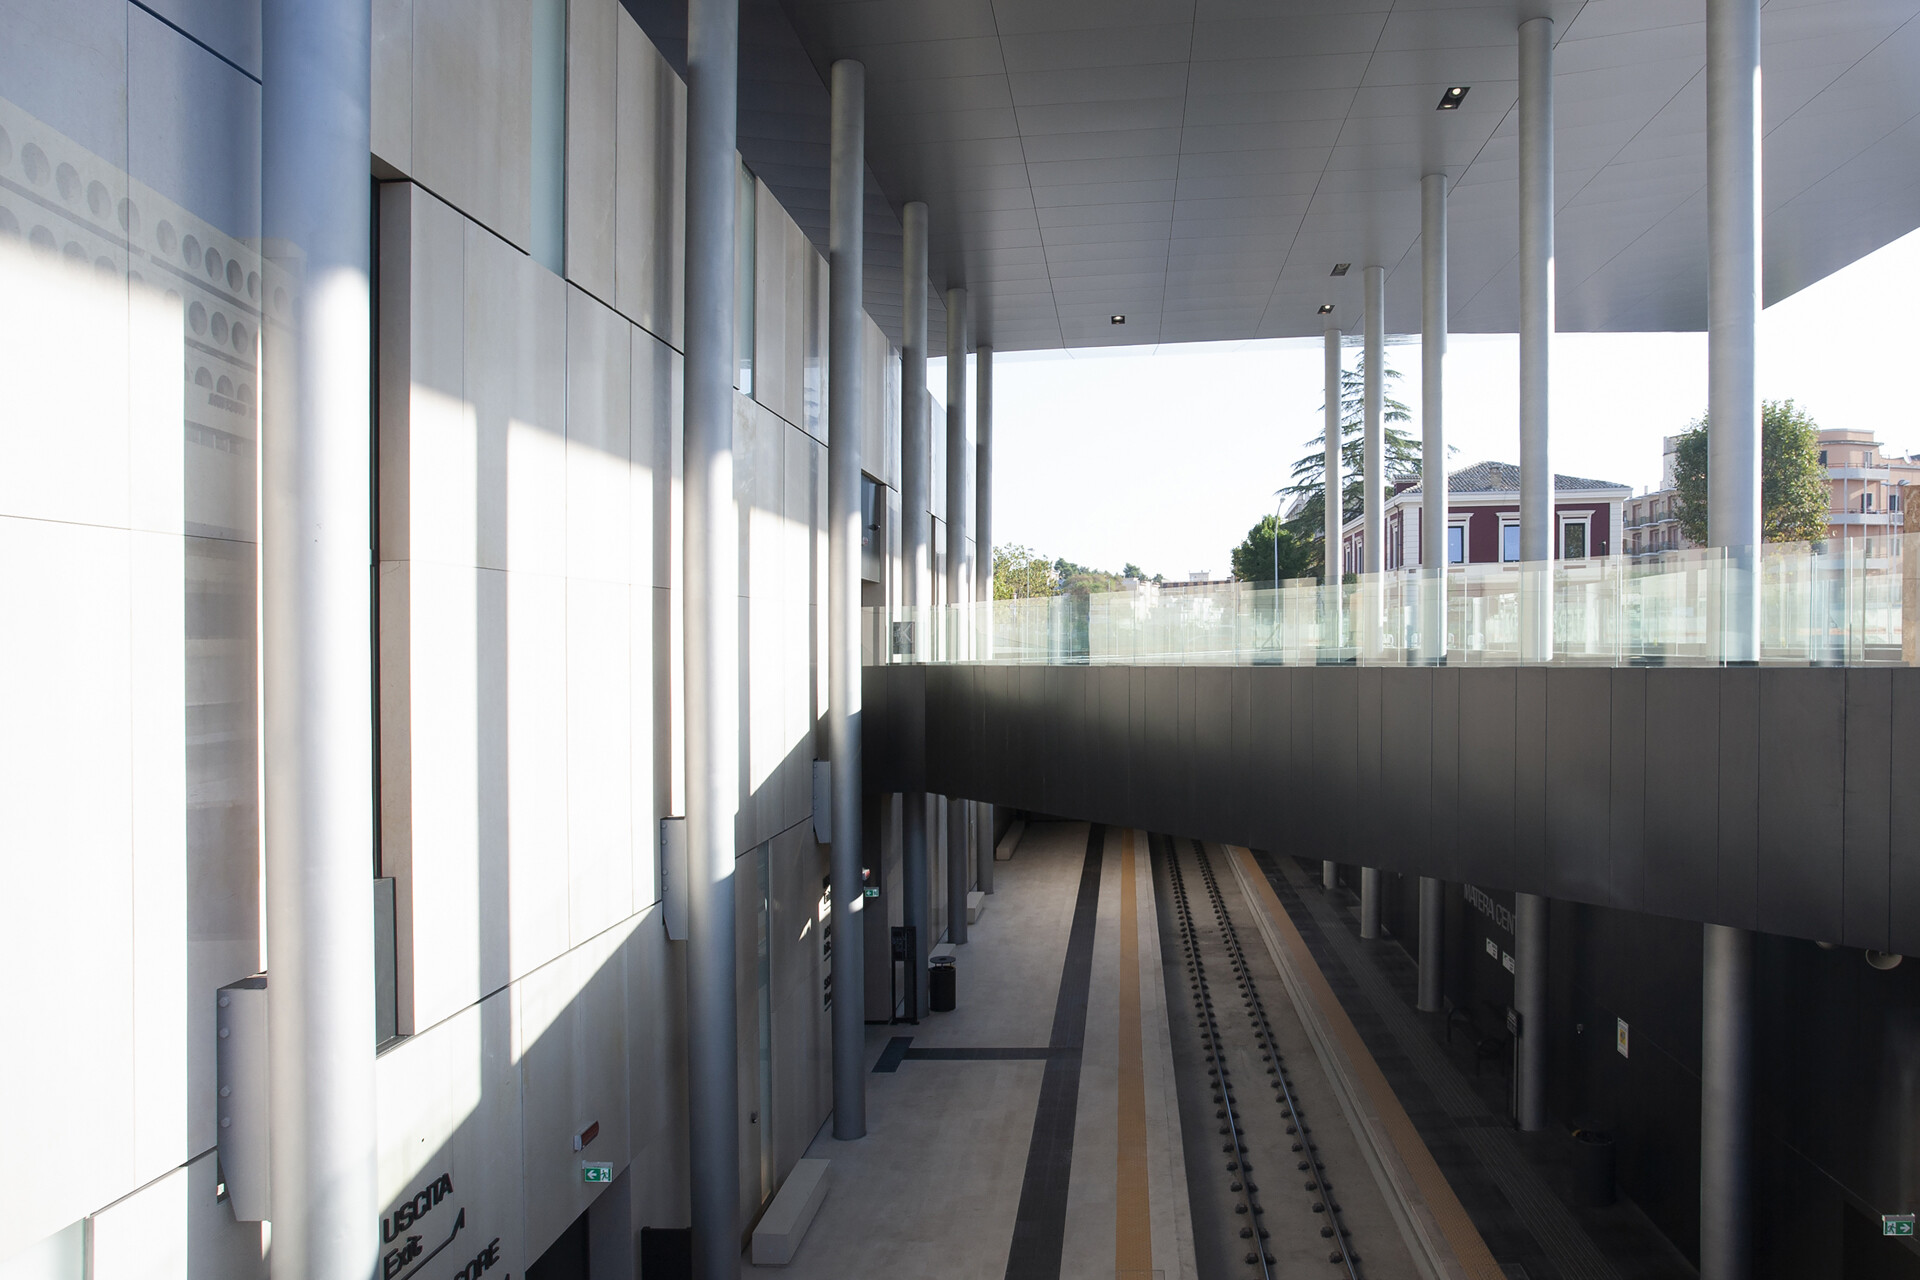 MATERA Centrale FAL treni Train Railway Station Stefano Boeri SCE Project